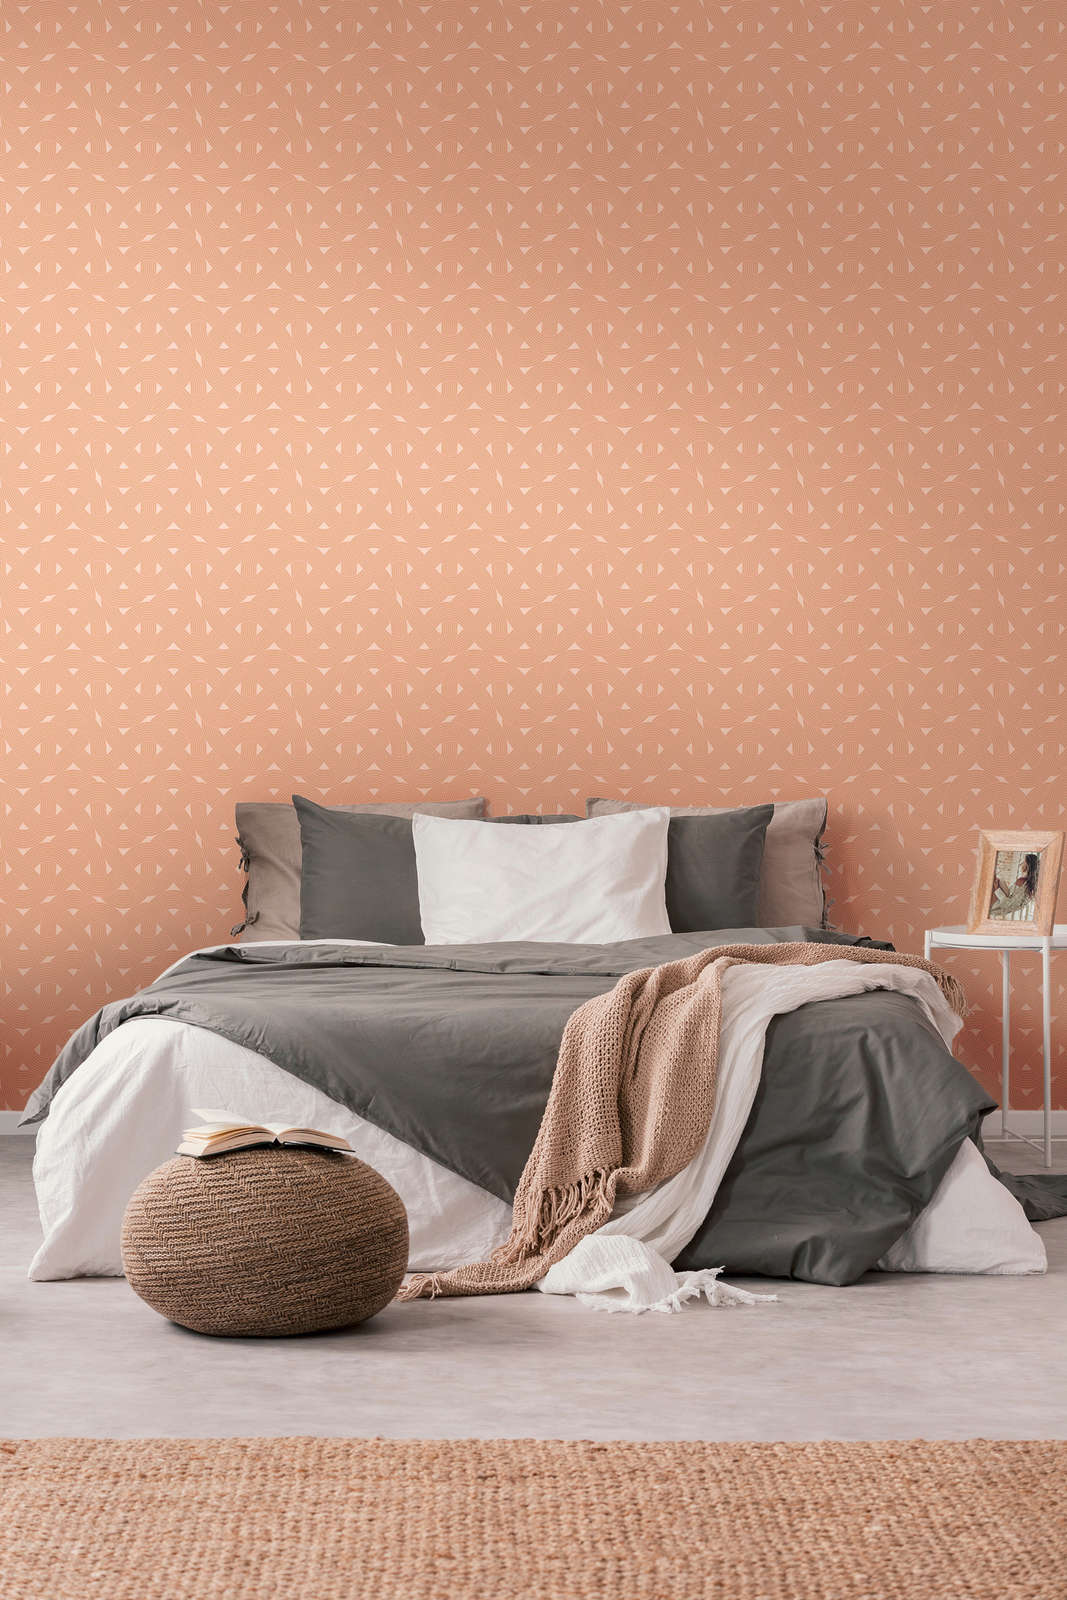             Art deco style graphic line pattern - orange, copper
        